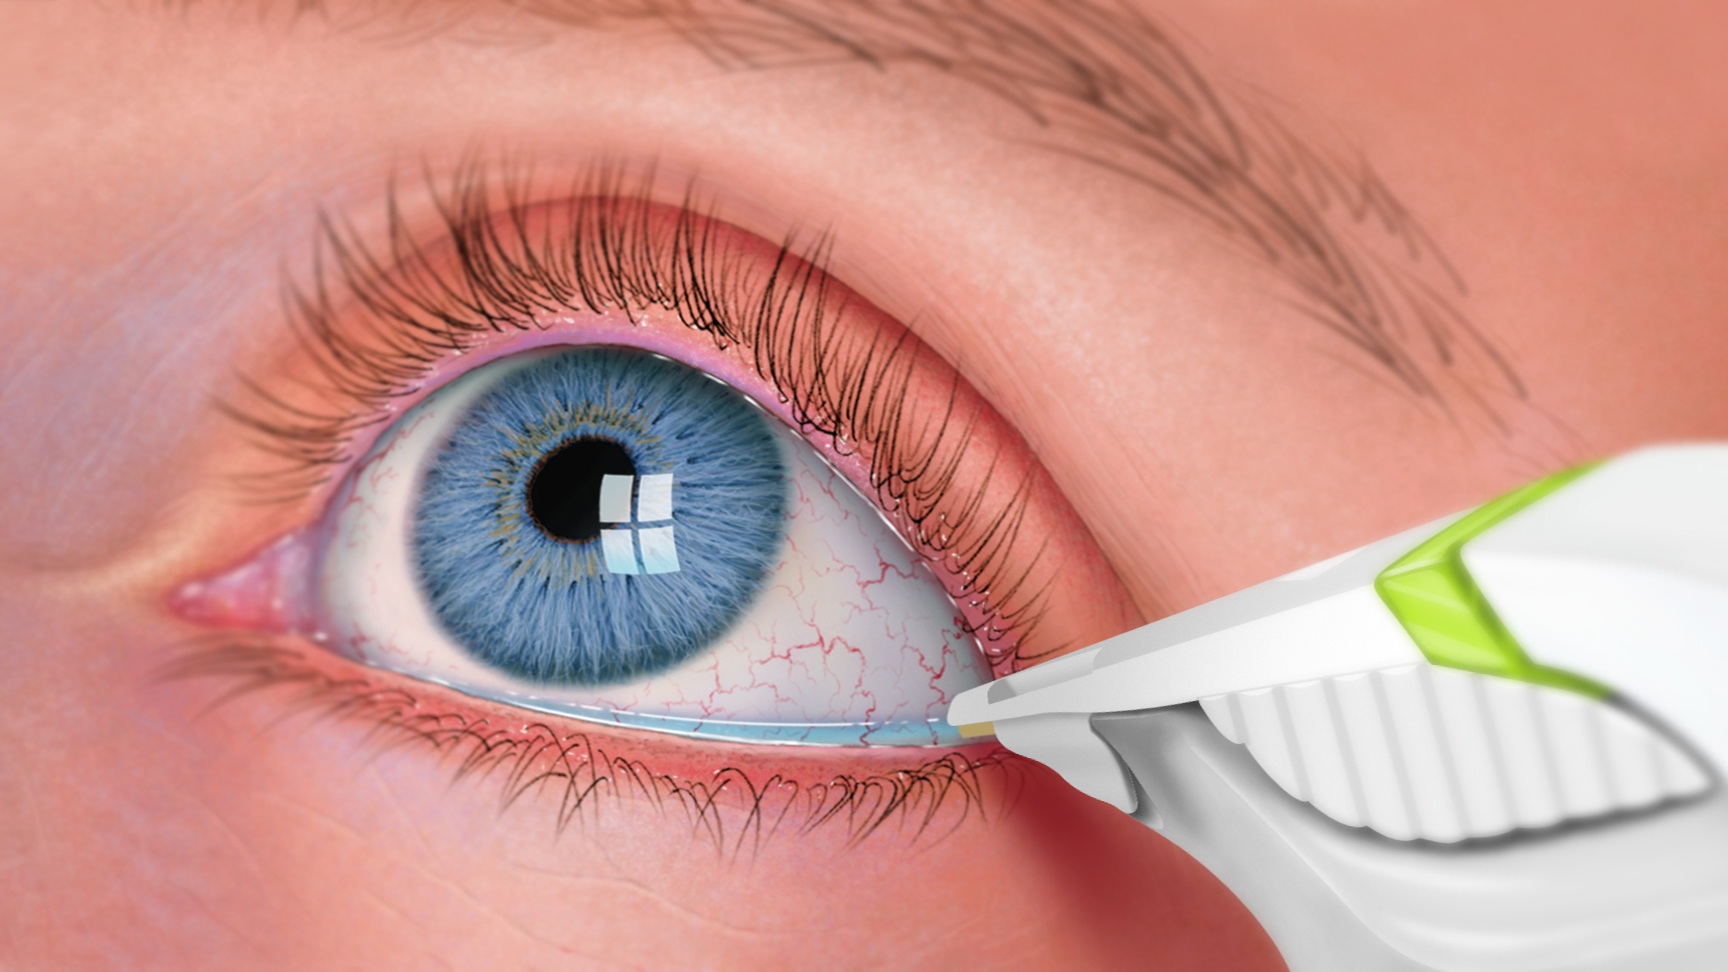 Eye treatment